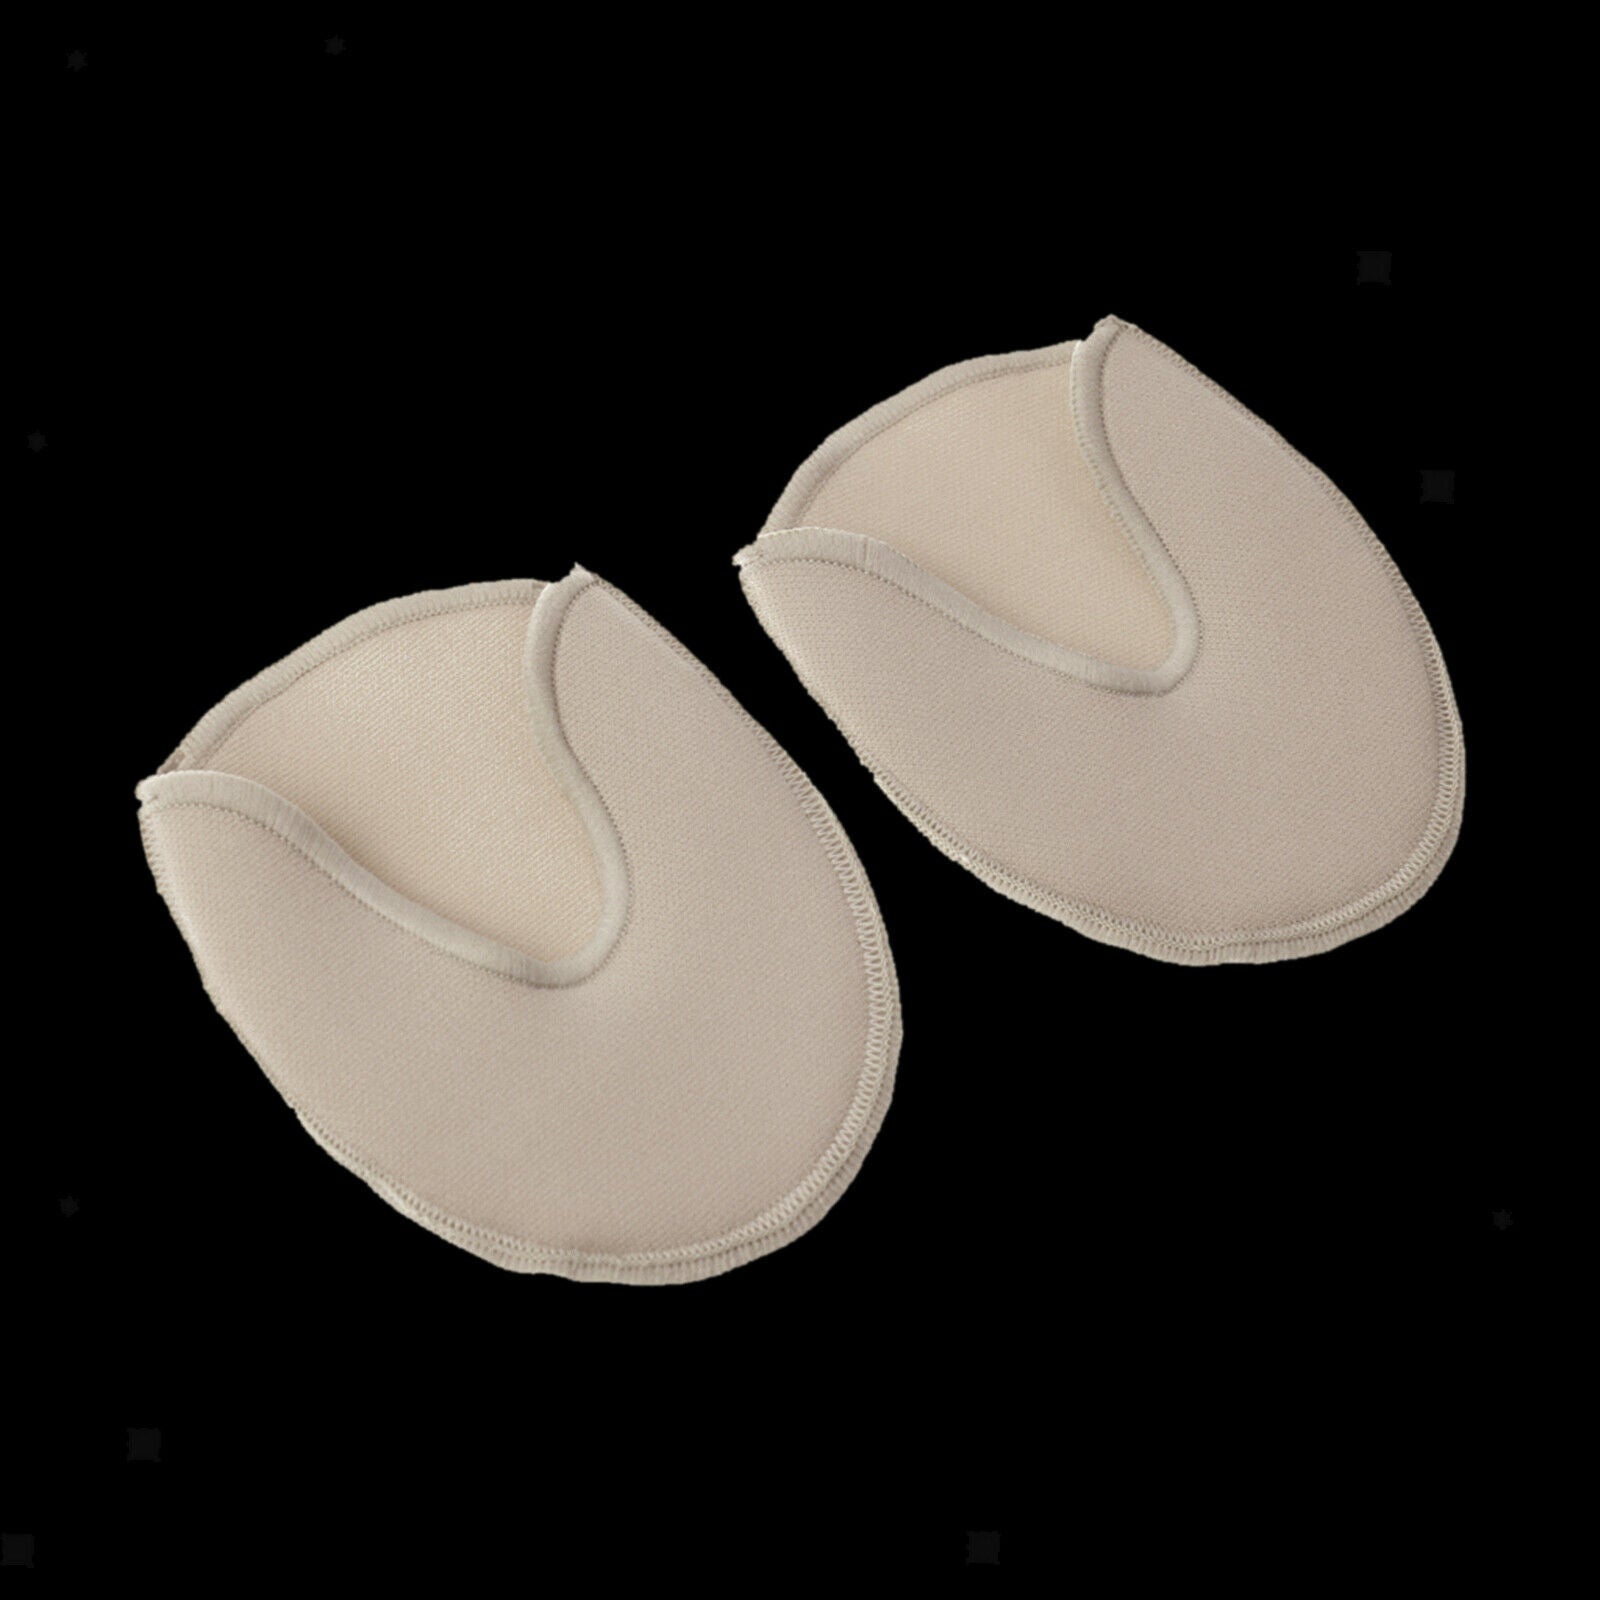 1 Pair of Ballet Dance Tiptoe Toe Caps/Covers/Pads/Protectors/Cushion